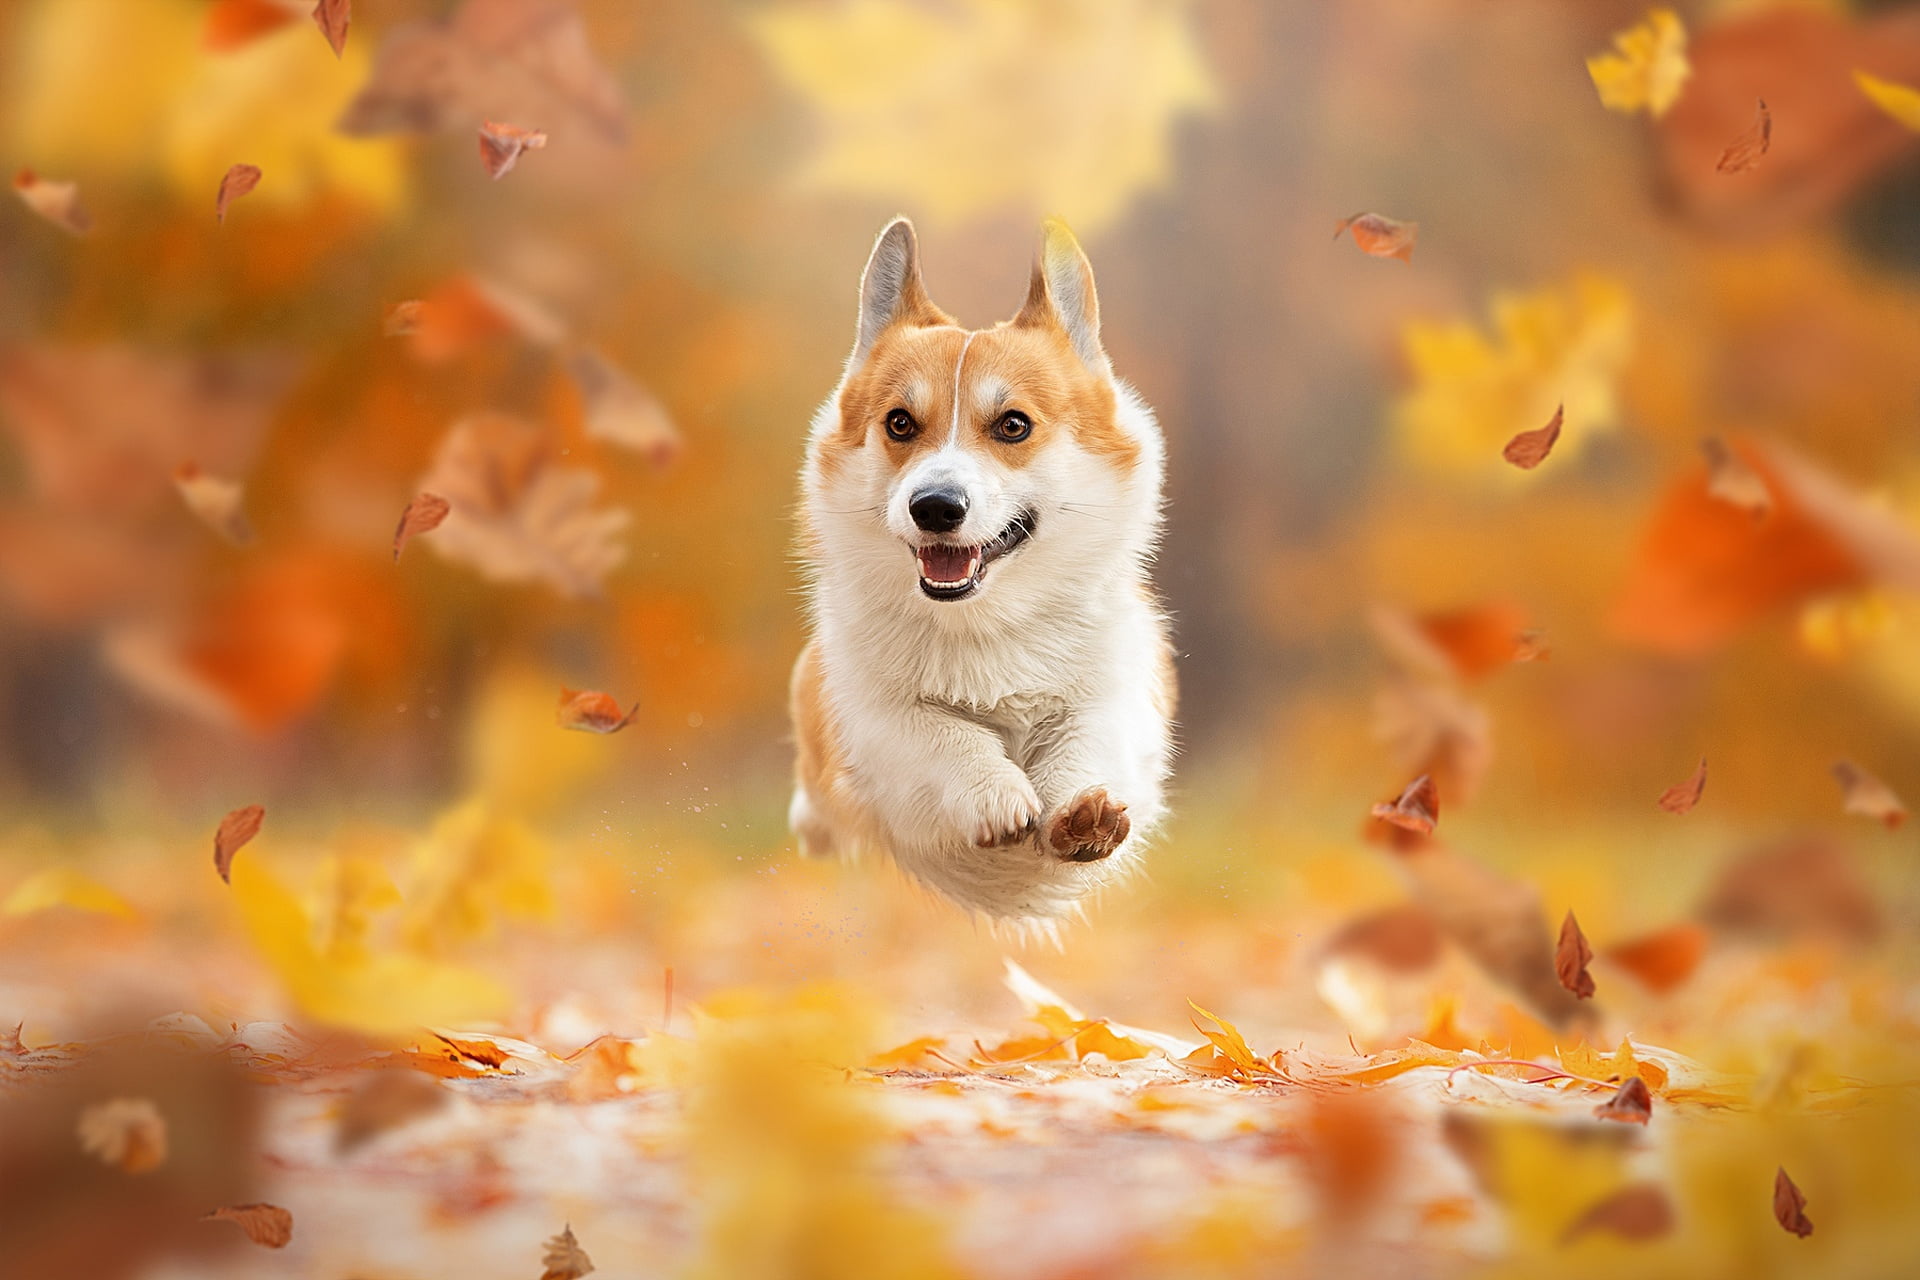 Dogs, Corgi, Fall, Leaf, Pet